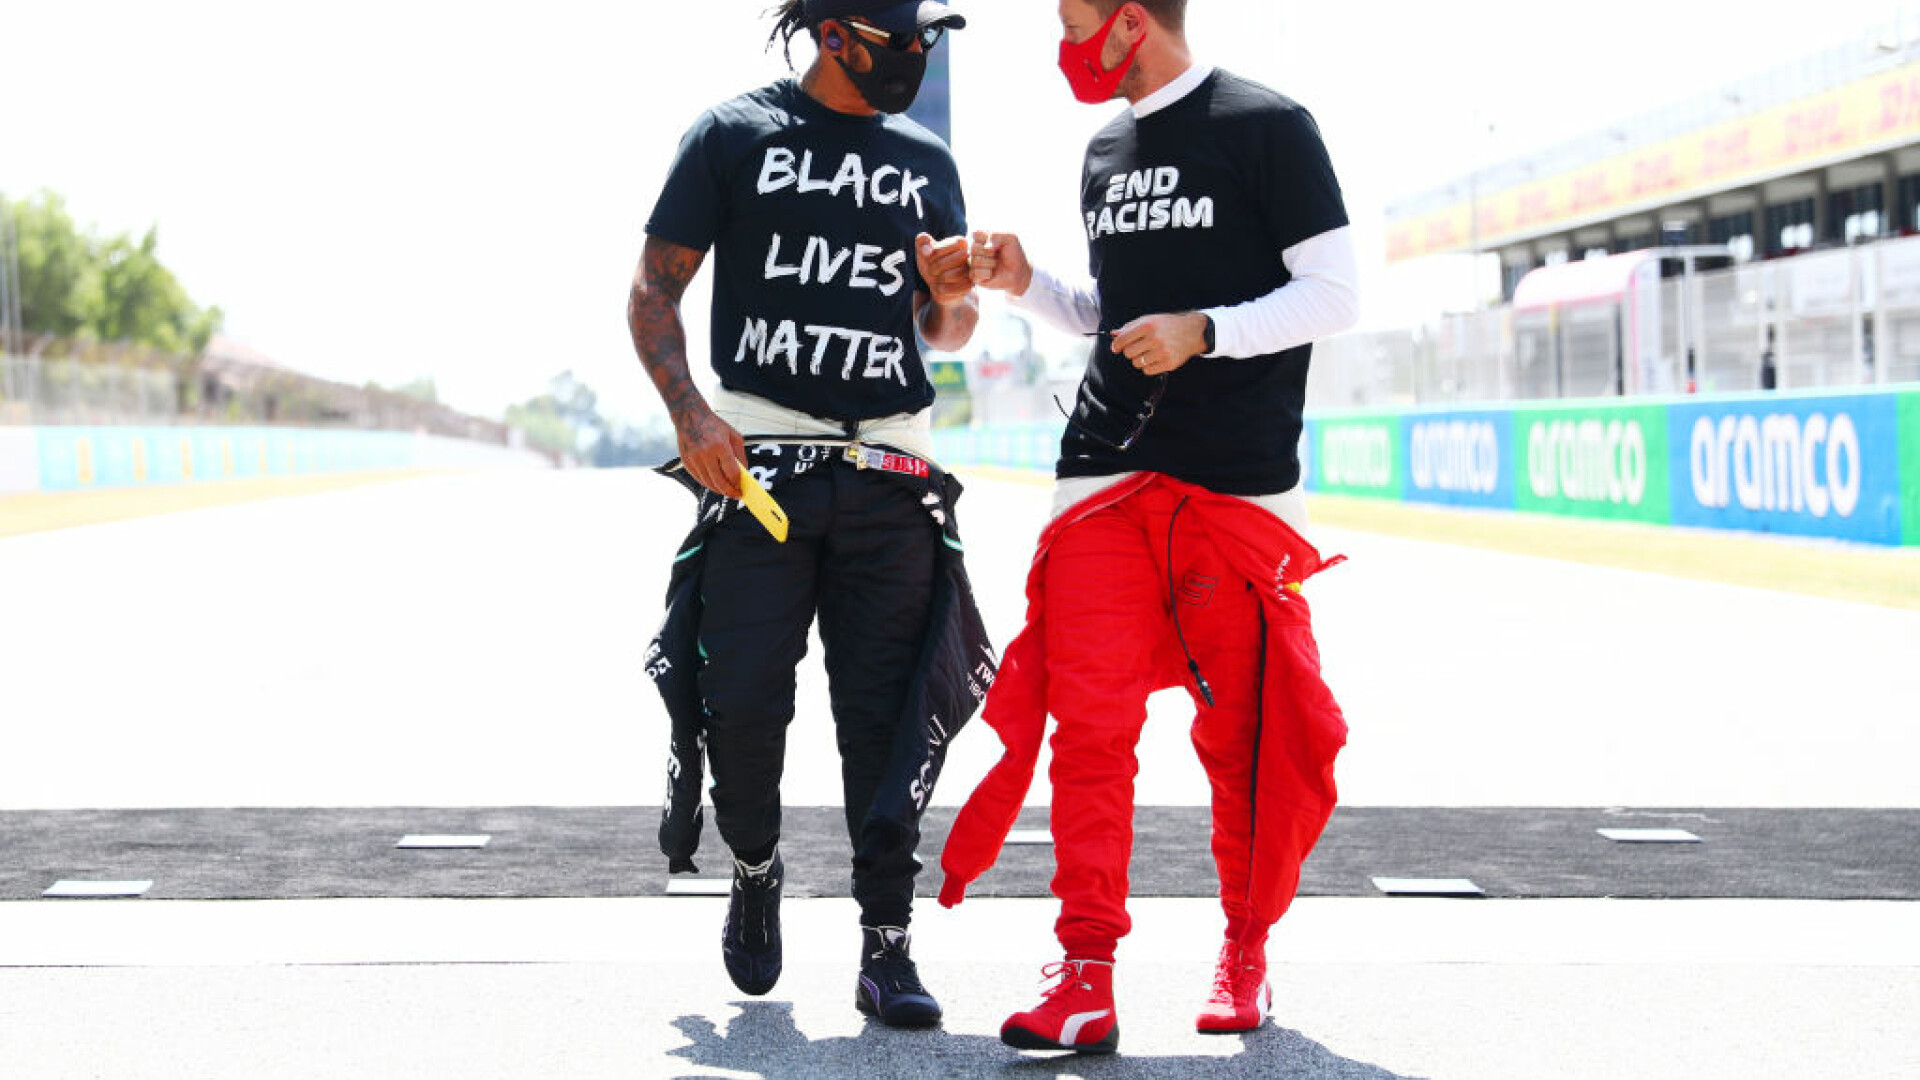 Lewis Hamilton și Sebastian Vettel critică legea anti-LGBT din Ungaria. ”Este inacceptabil, laș și înșelător”